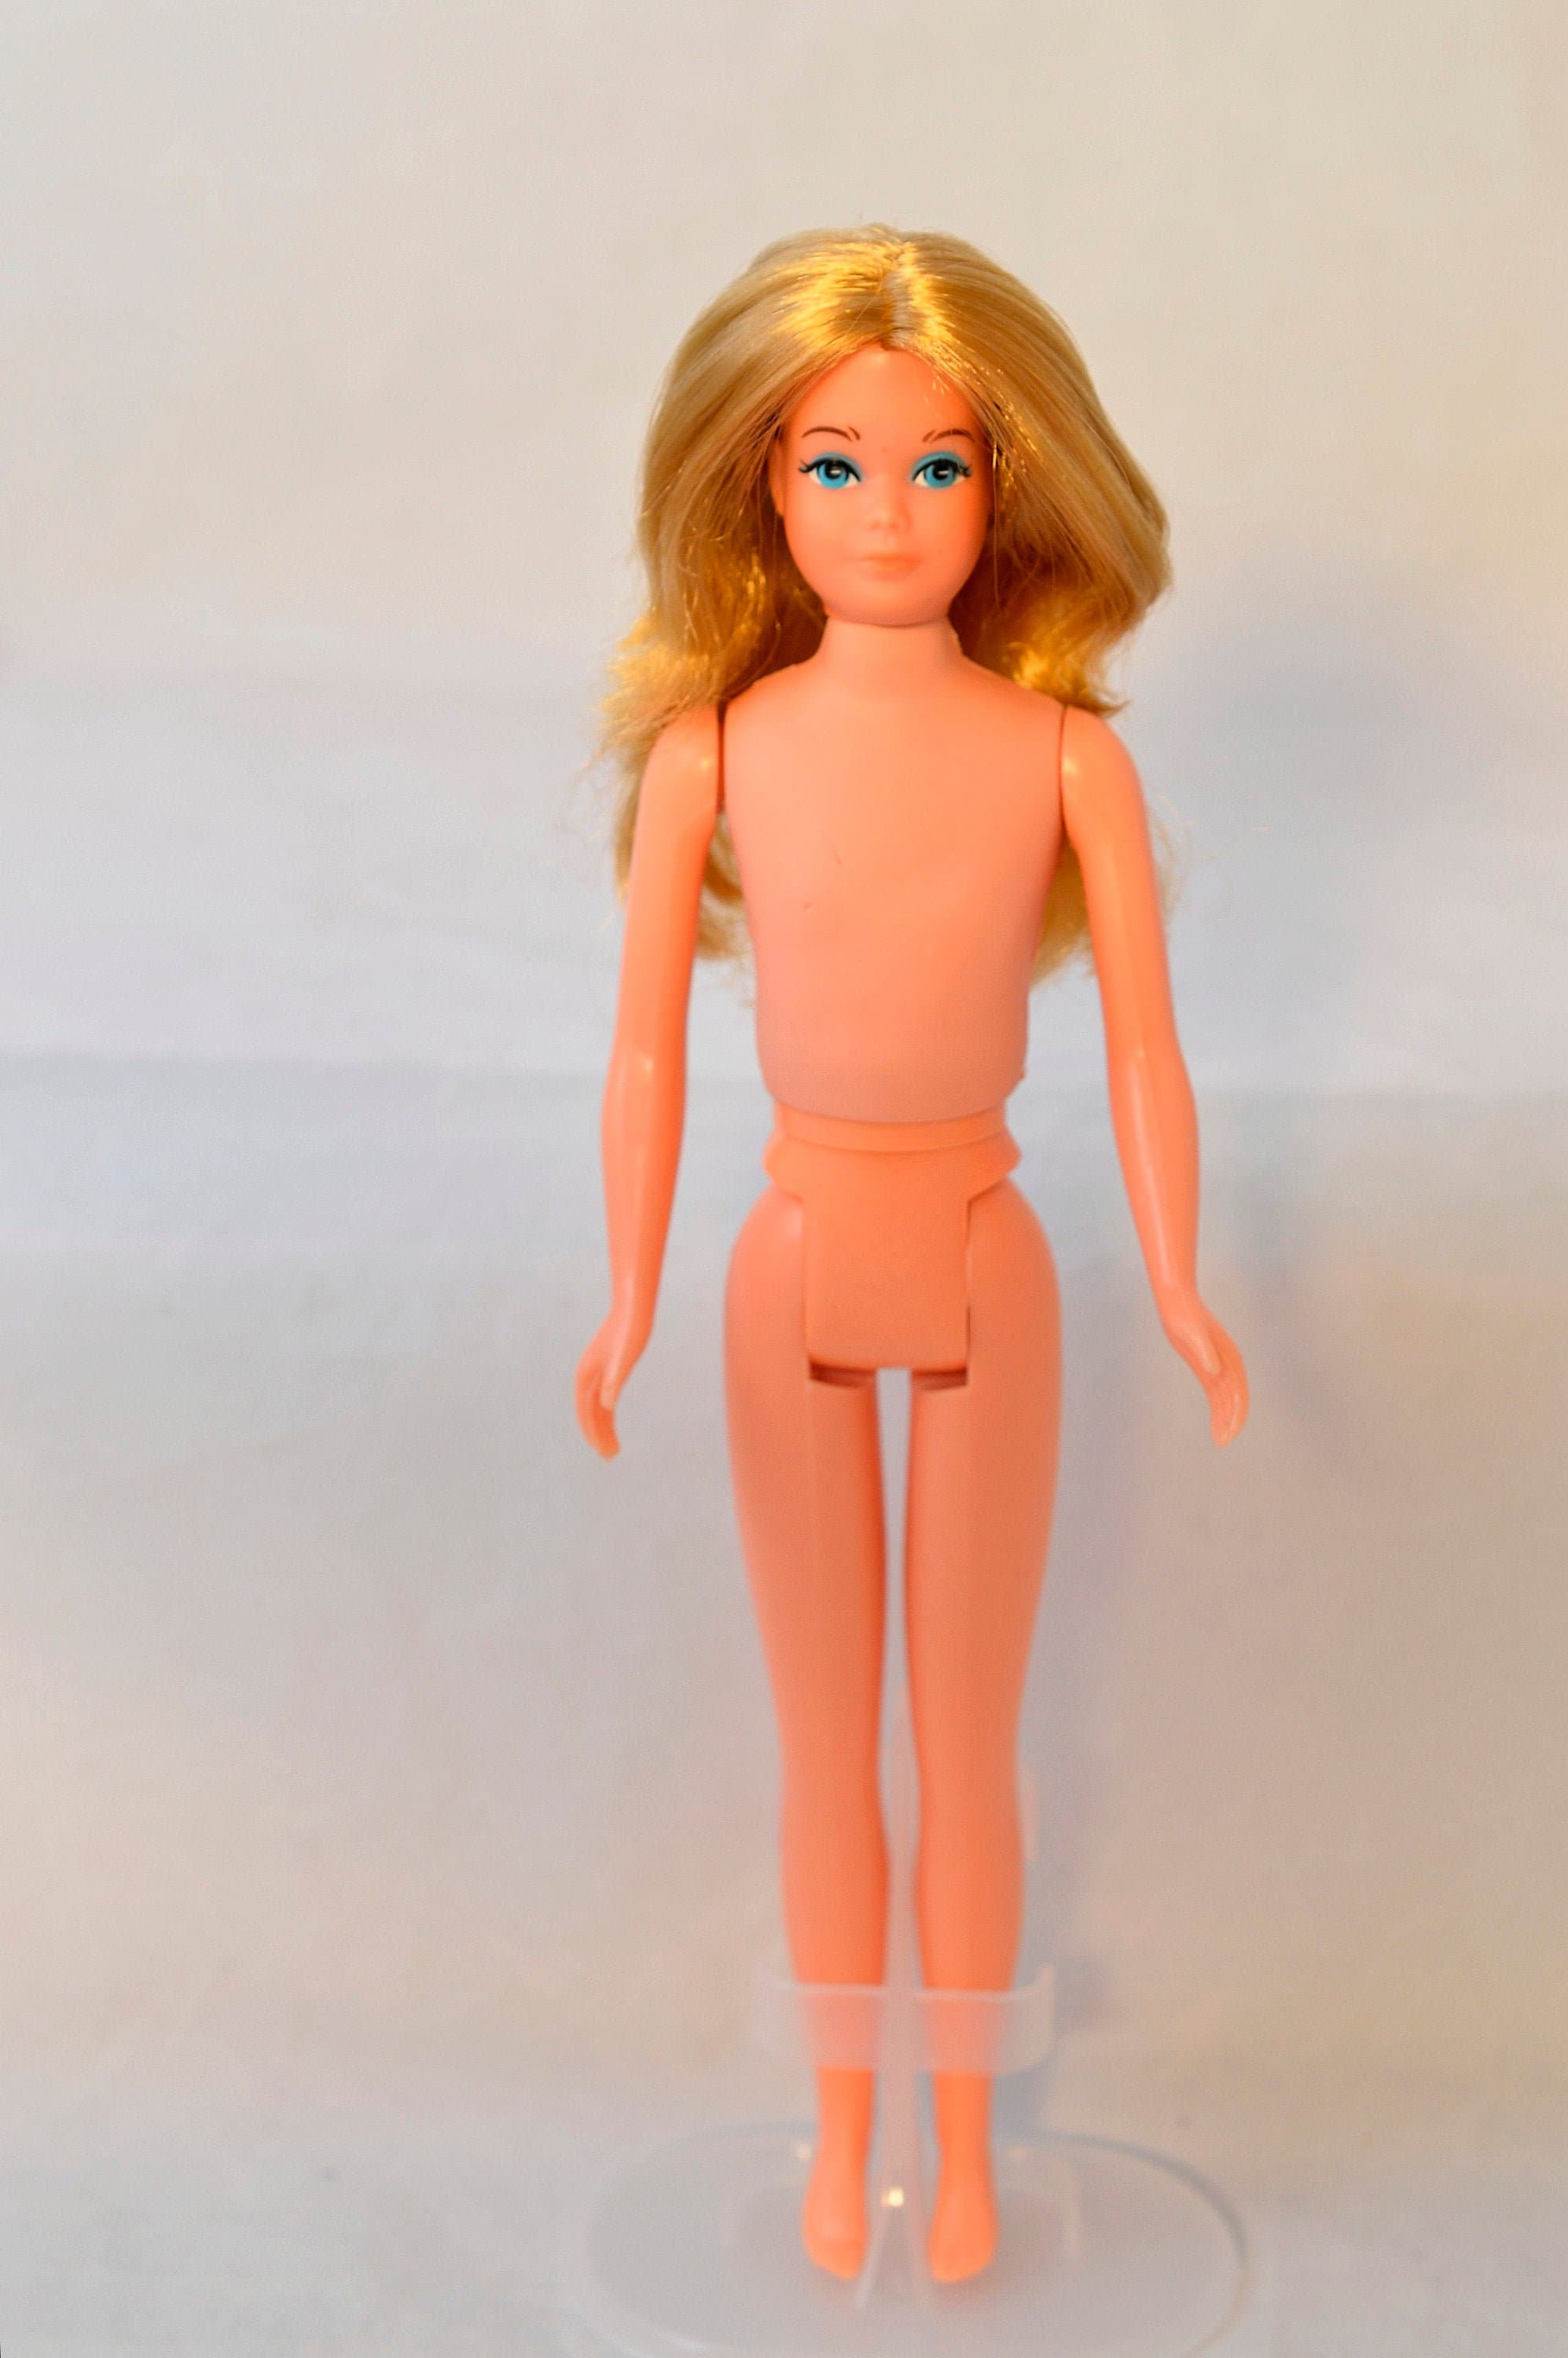 Vintage Mattel Growing up Skipper Doll 1975 